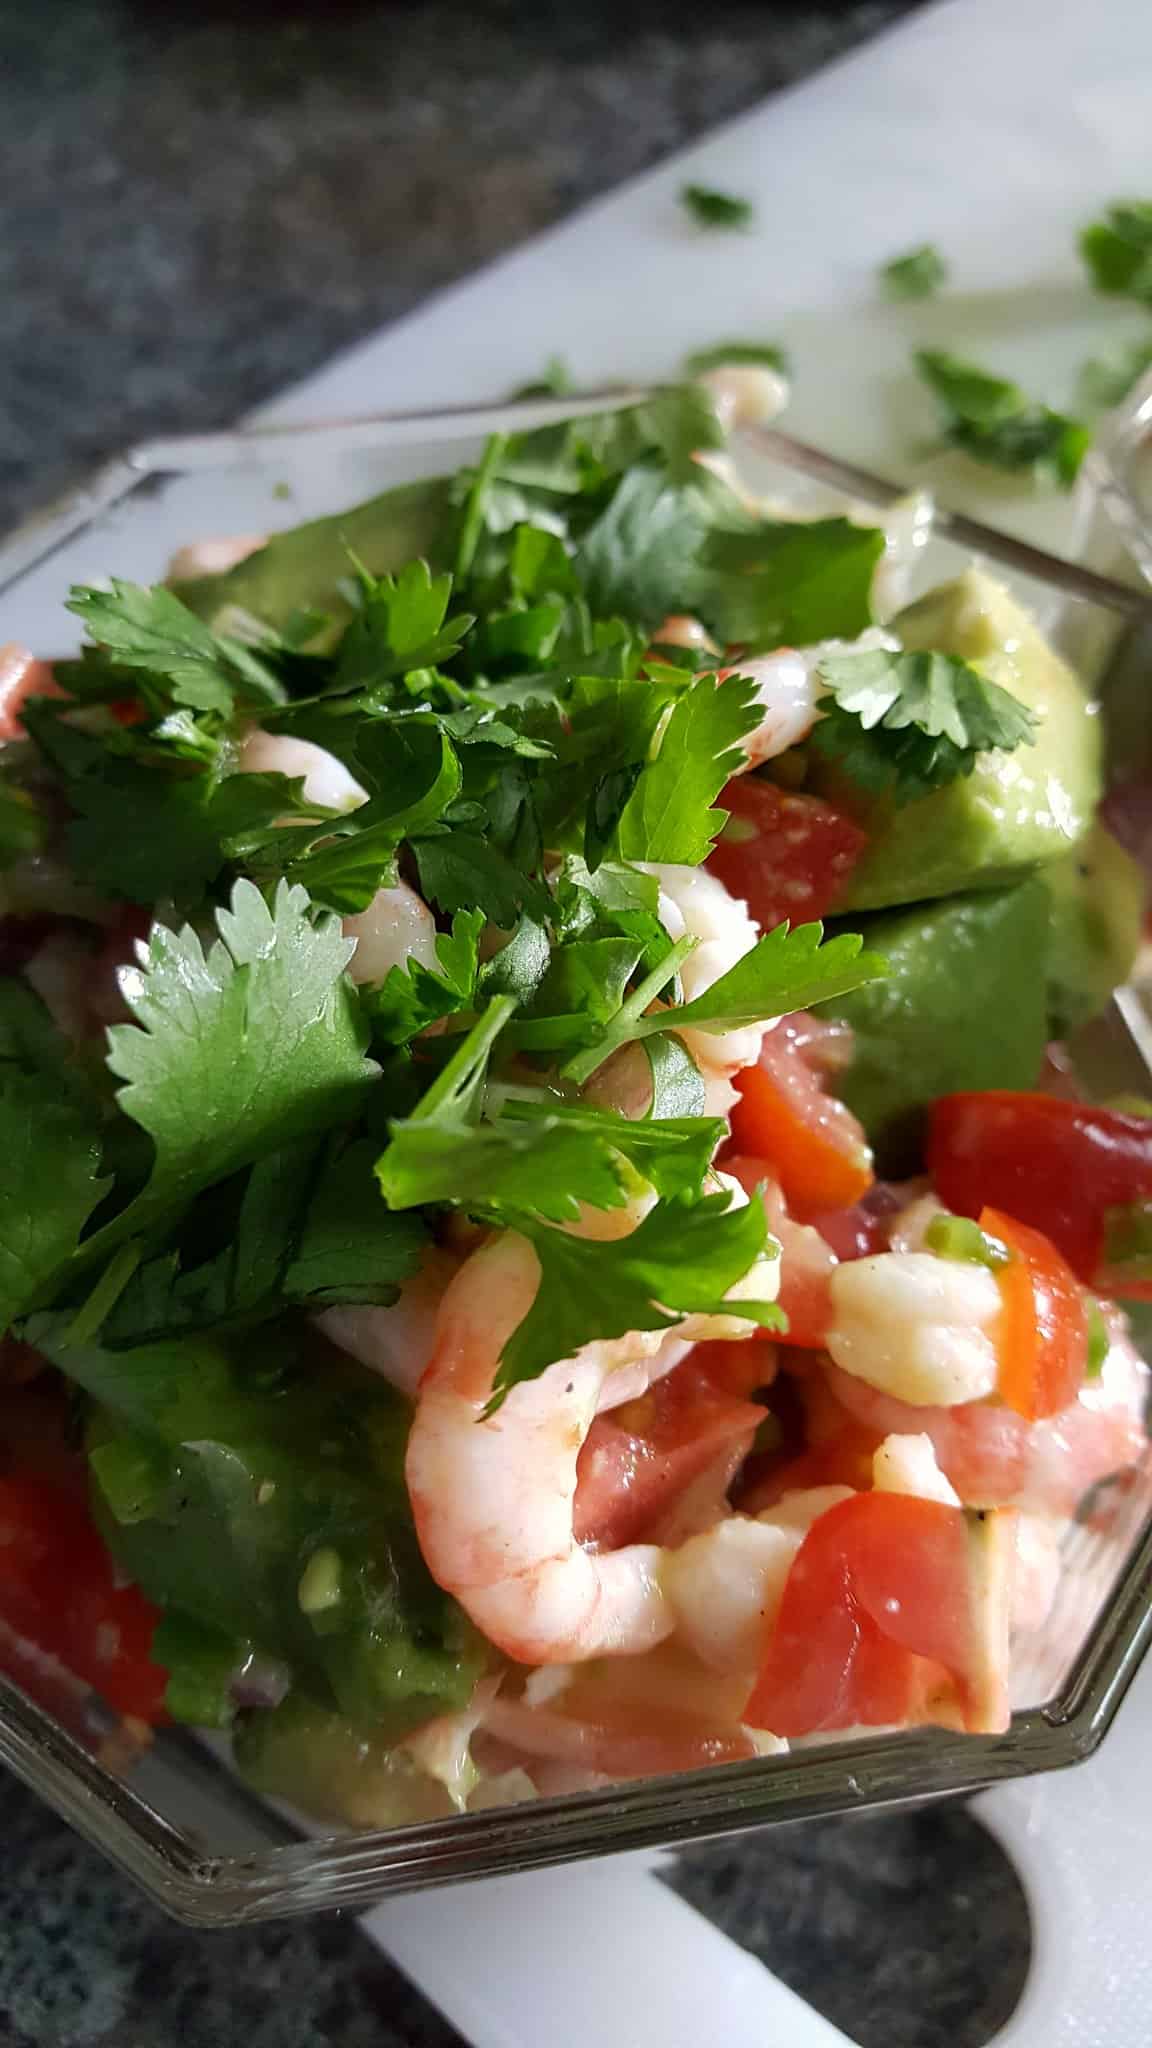 How To Make The Best Shrimp Avocado Salad